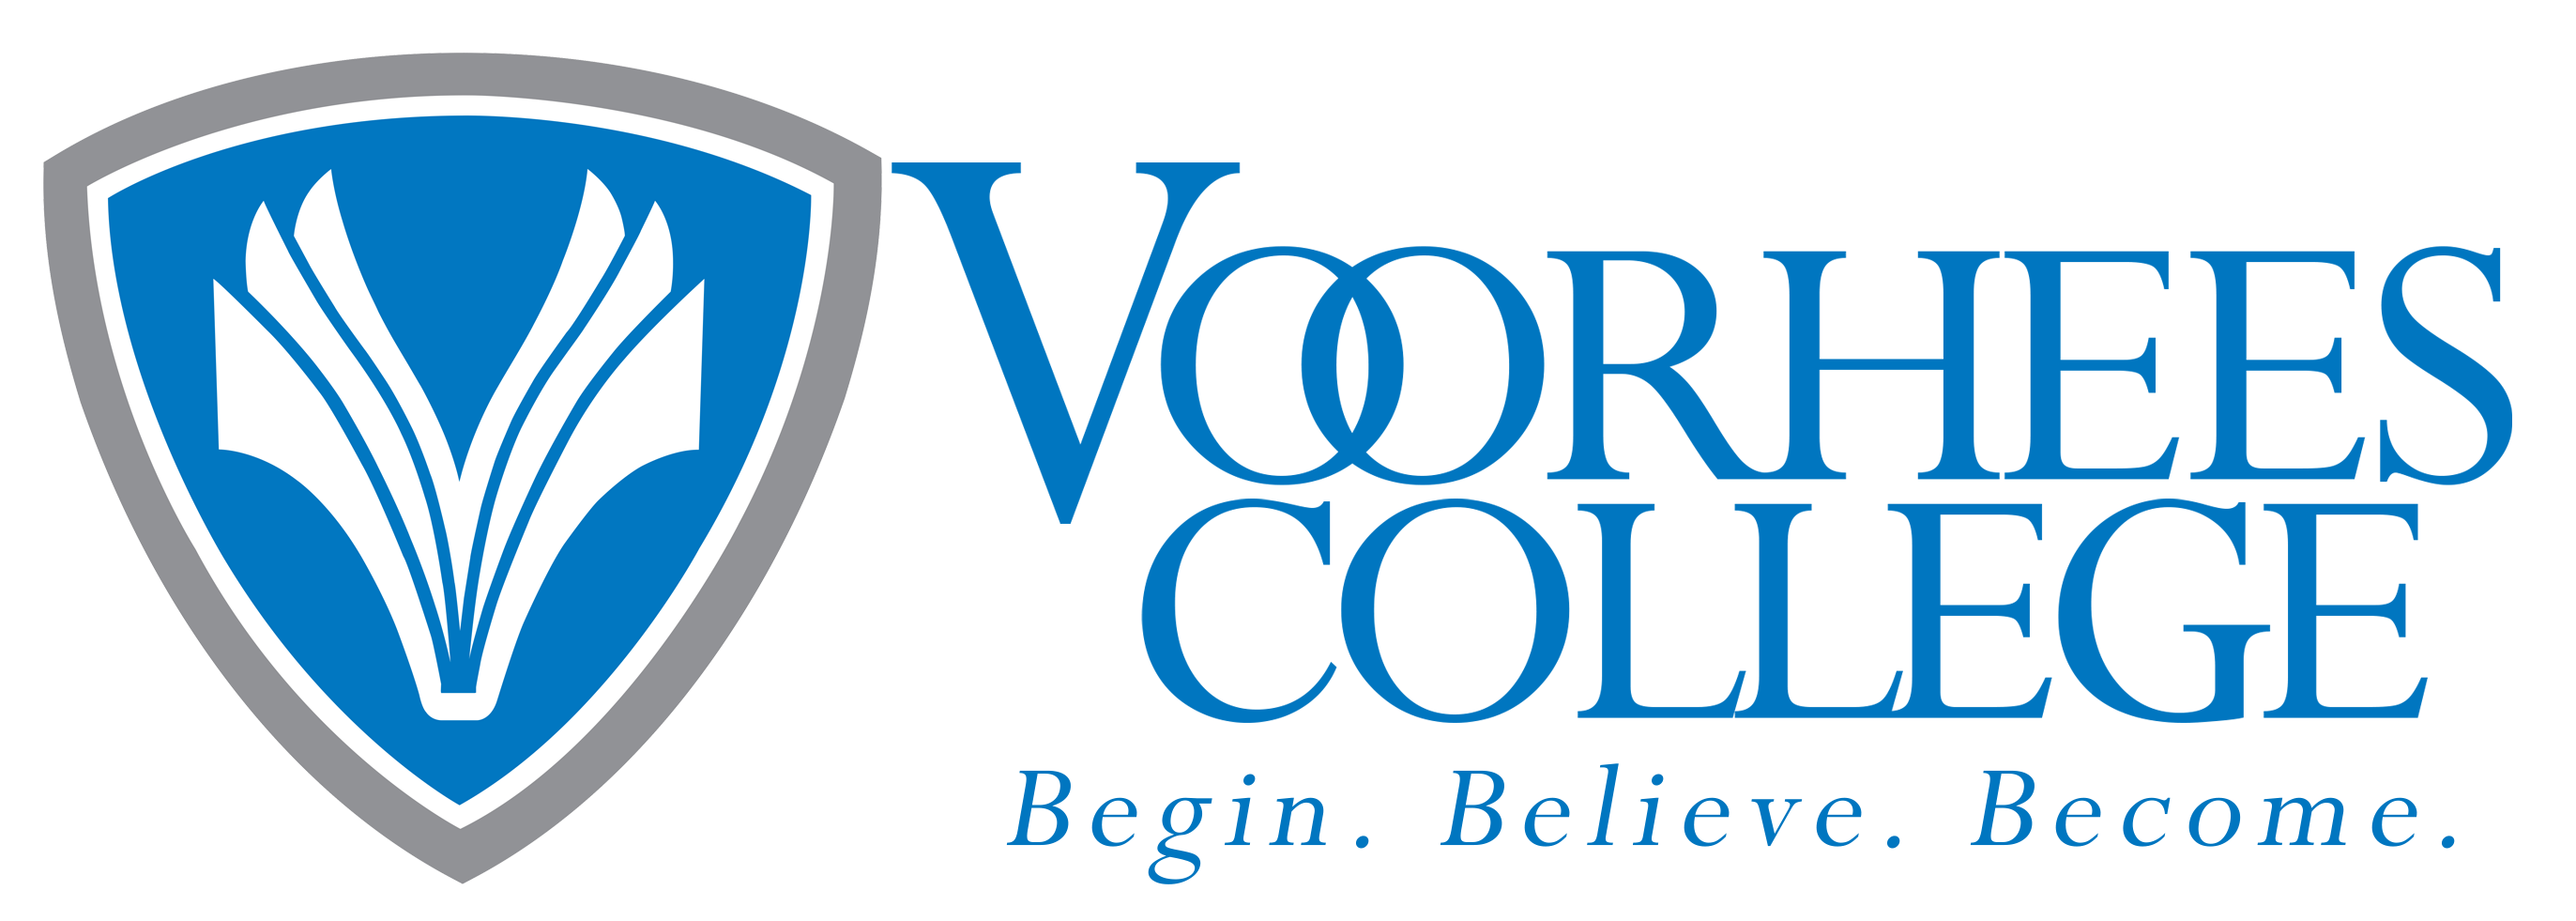 Voorhees College logo